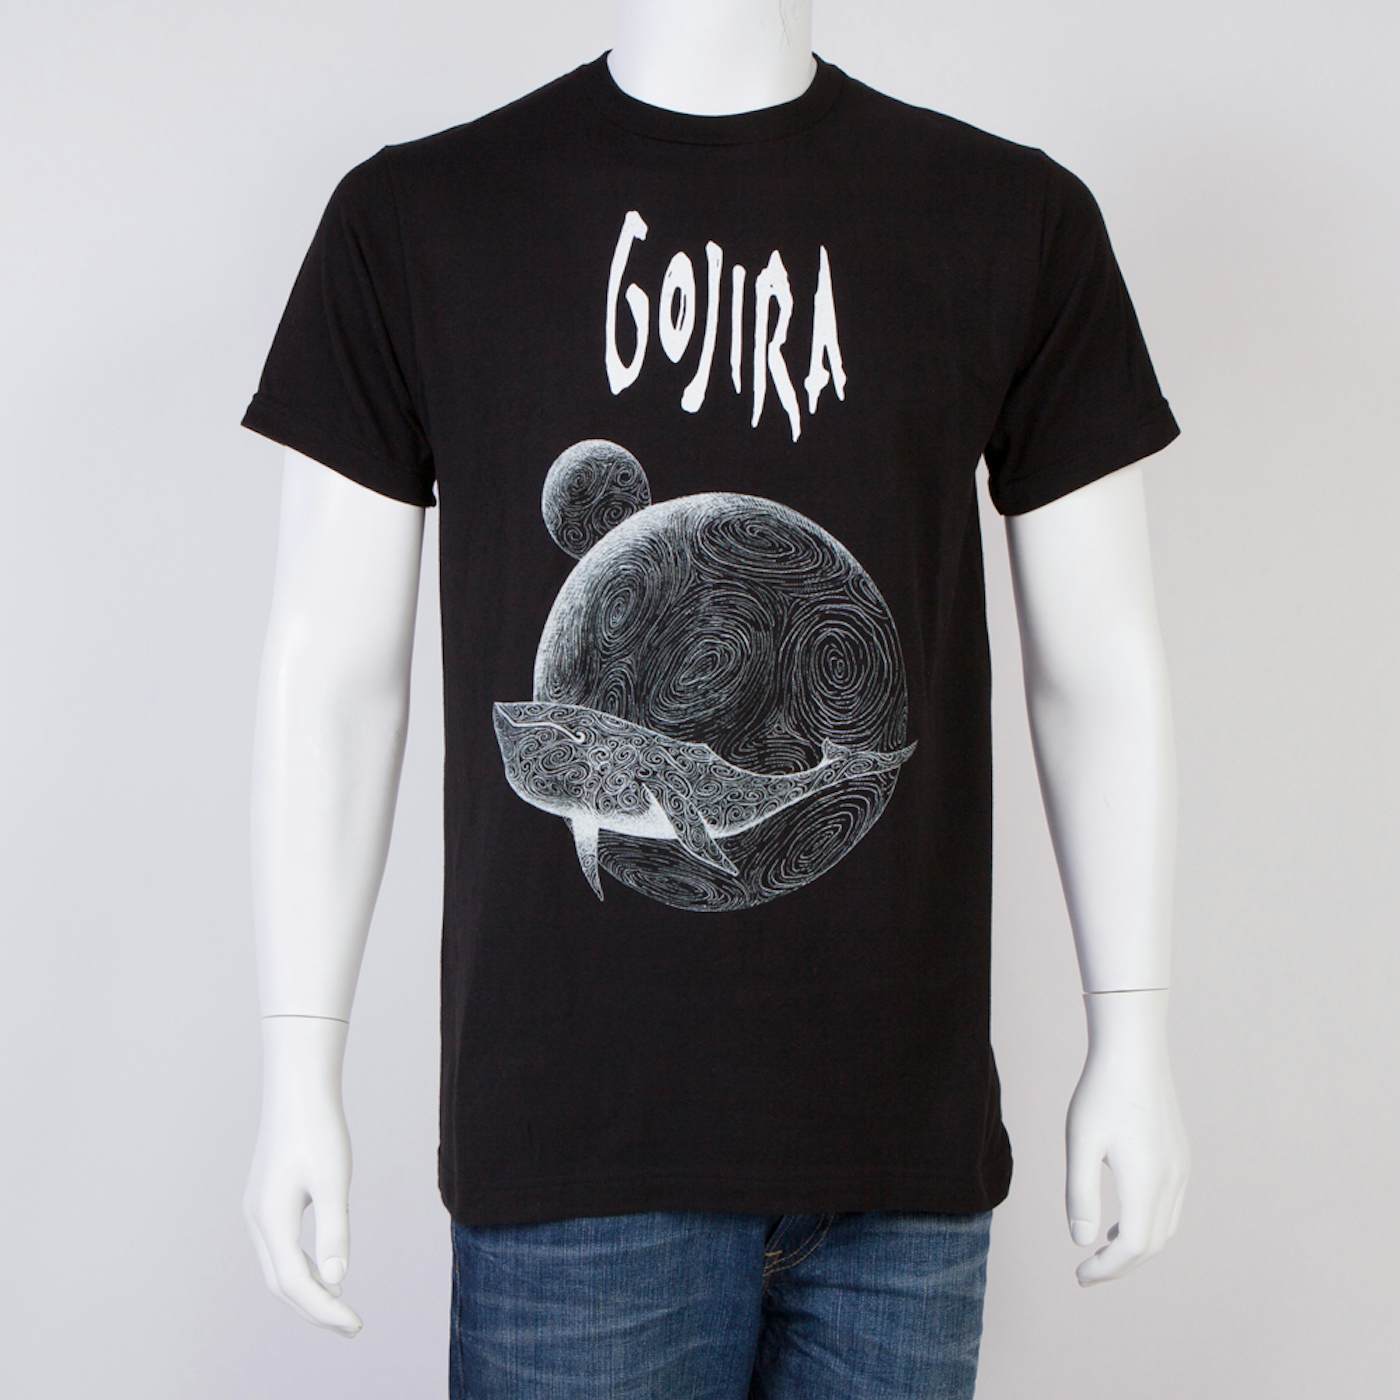 Gojira From Mars to Sirius 10th Anniversary T-Shirt